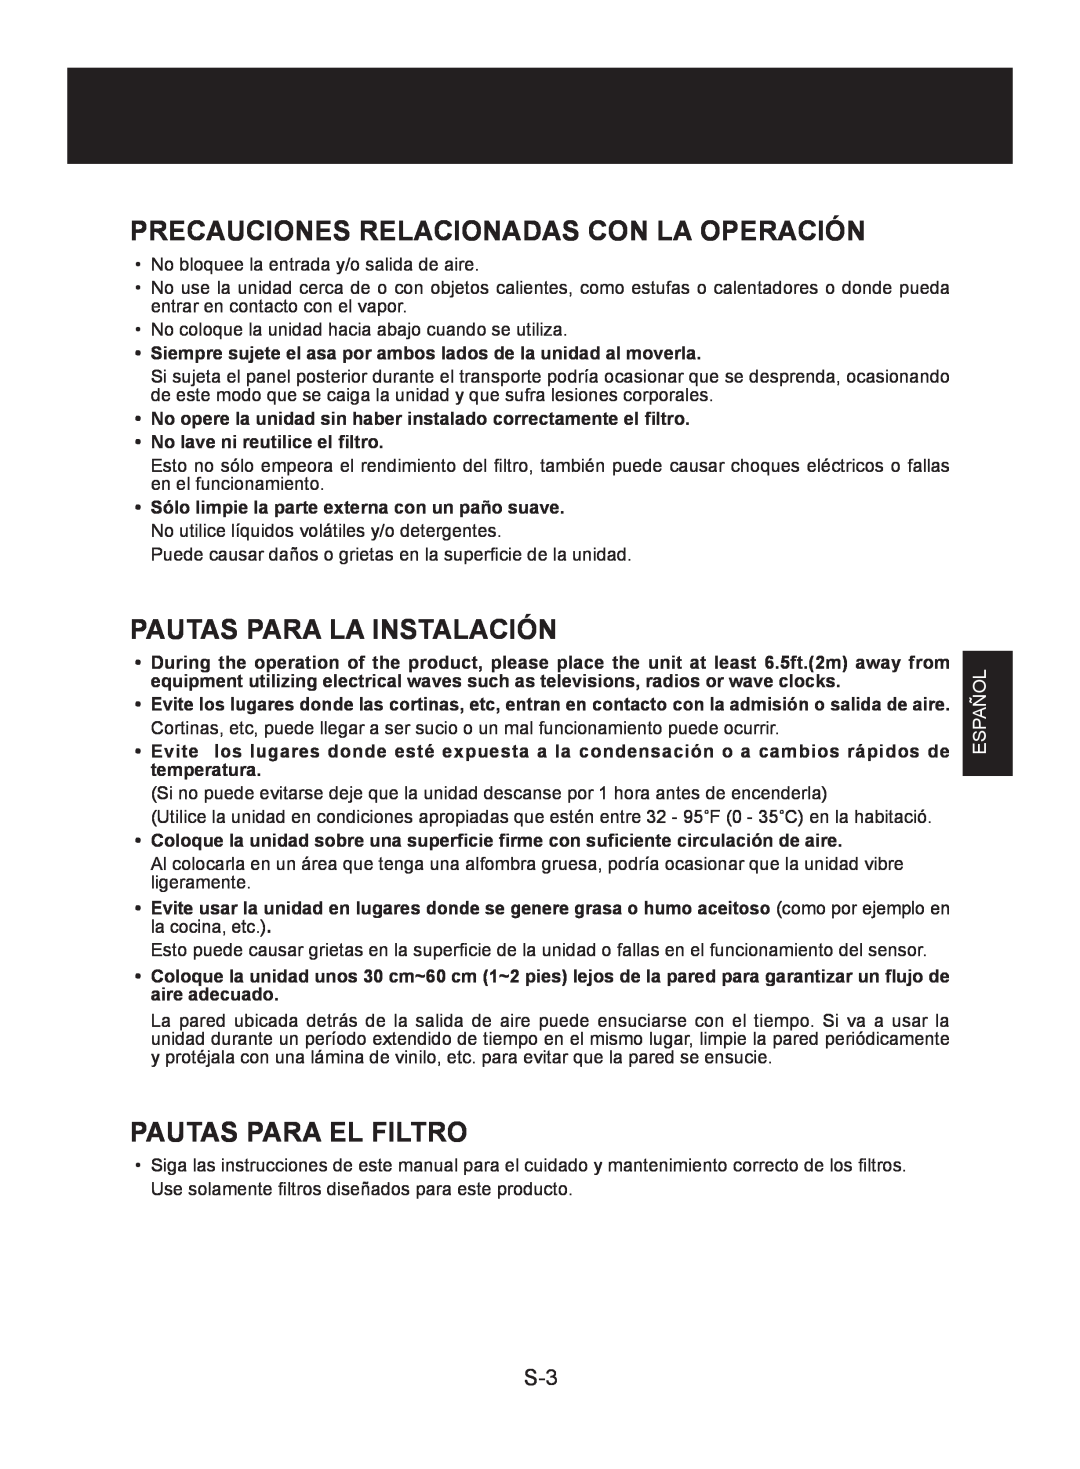 Sharp FP-A40UW Precauciones Relacionadas Con La Operación, Pautas Para La Instalación, Pautas Para El Filtro, Español 